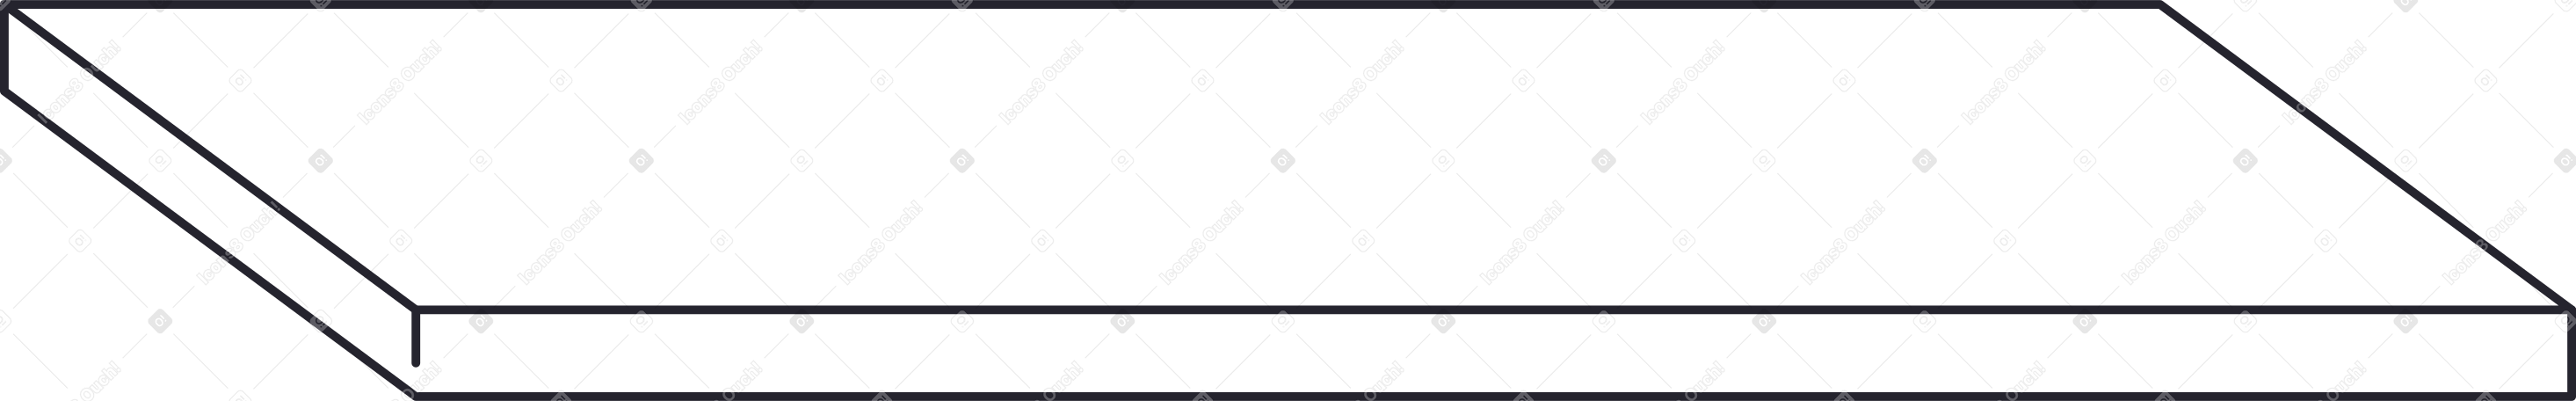 table top tilted Illustration in PNG, SVG